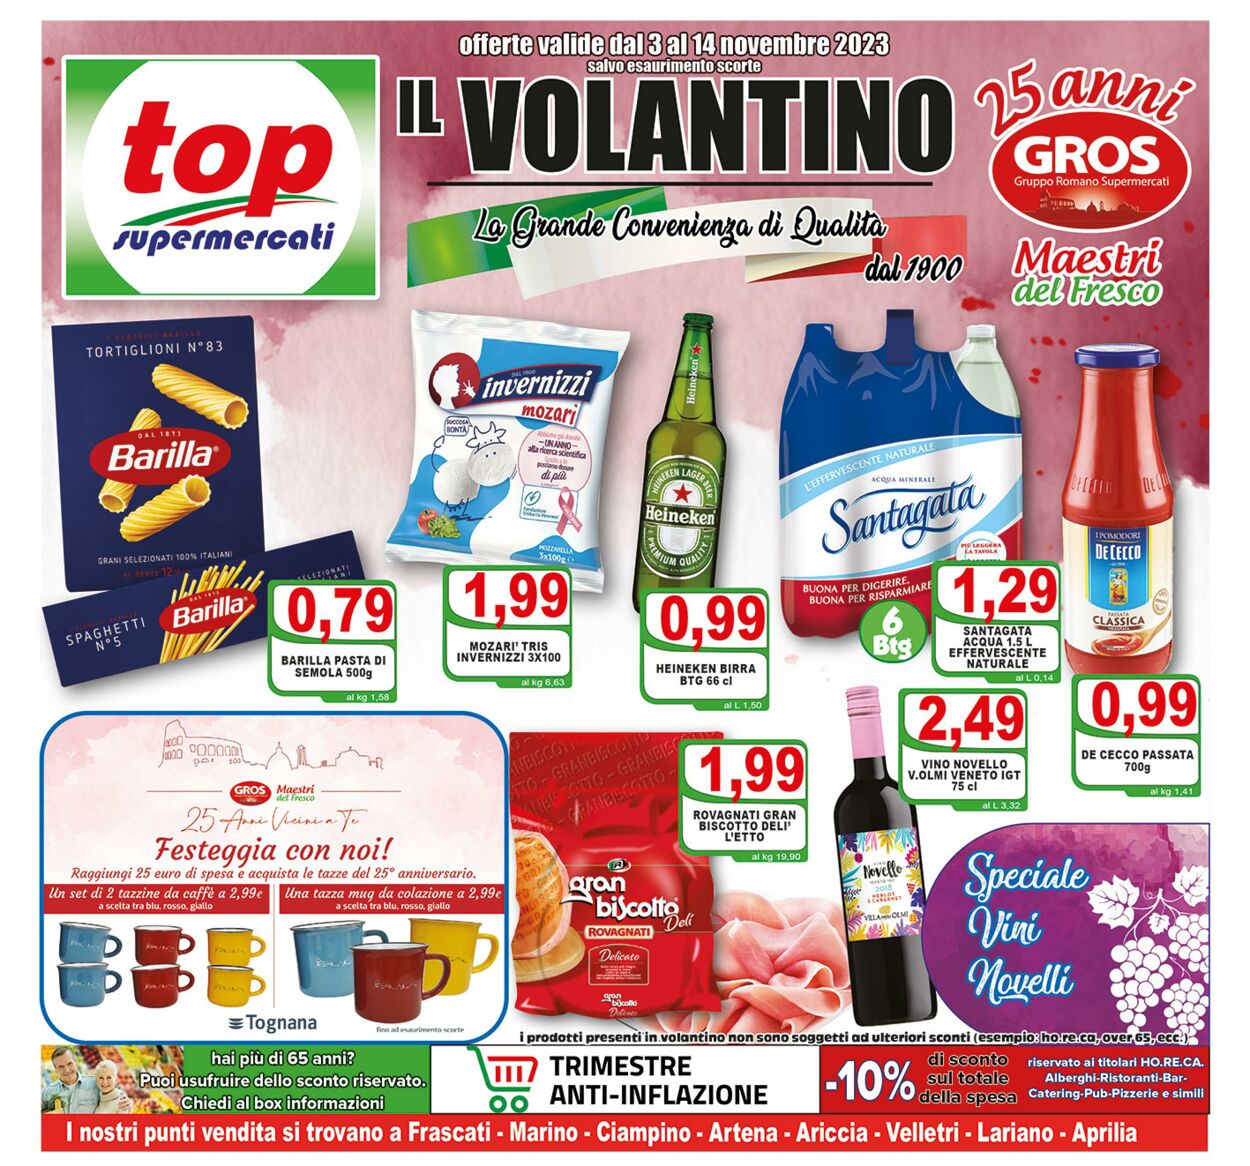 Top Supermercati Volantini promozionali